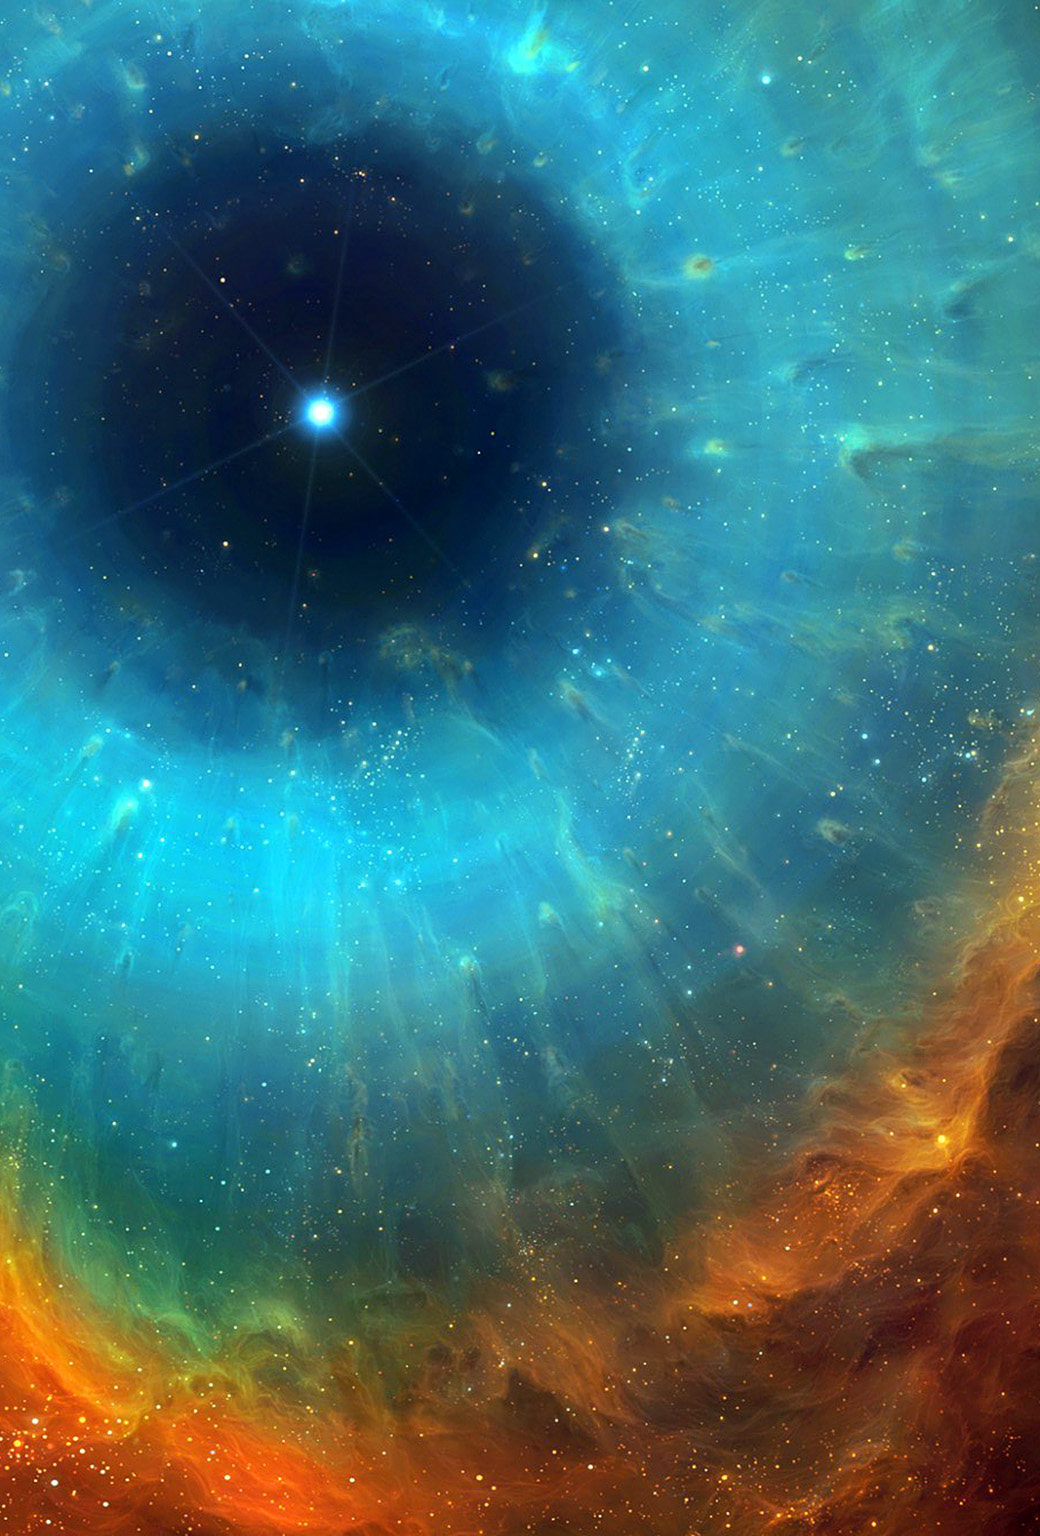 iphone parallax wallpaper,naturaleza,cielo,espacio exterior,nebulosa,objeto astronómico